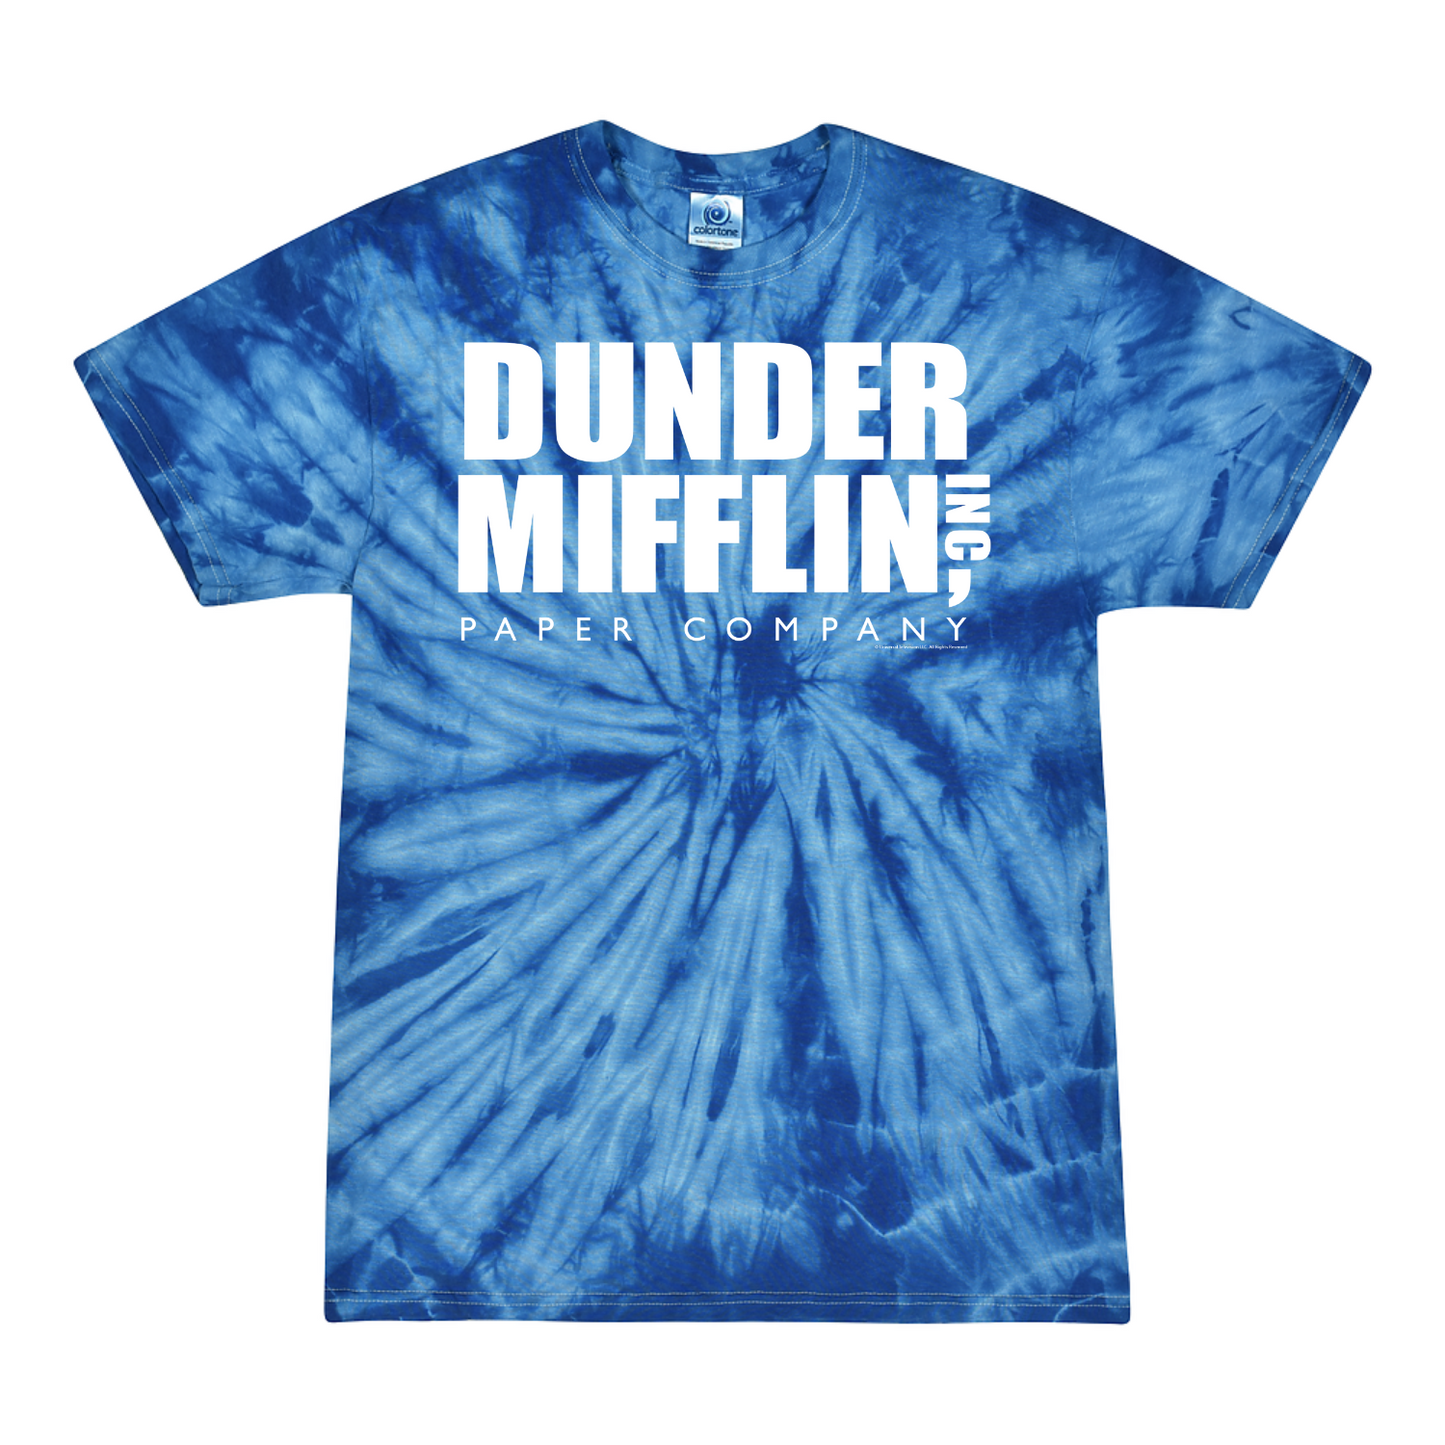 The Office Dunder Mifflin Tie-Dye Short Sleeve T-Shirt